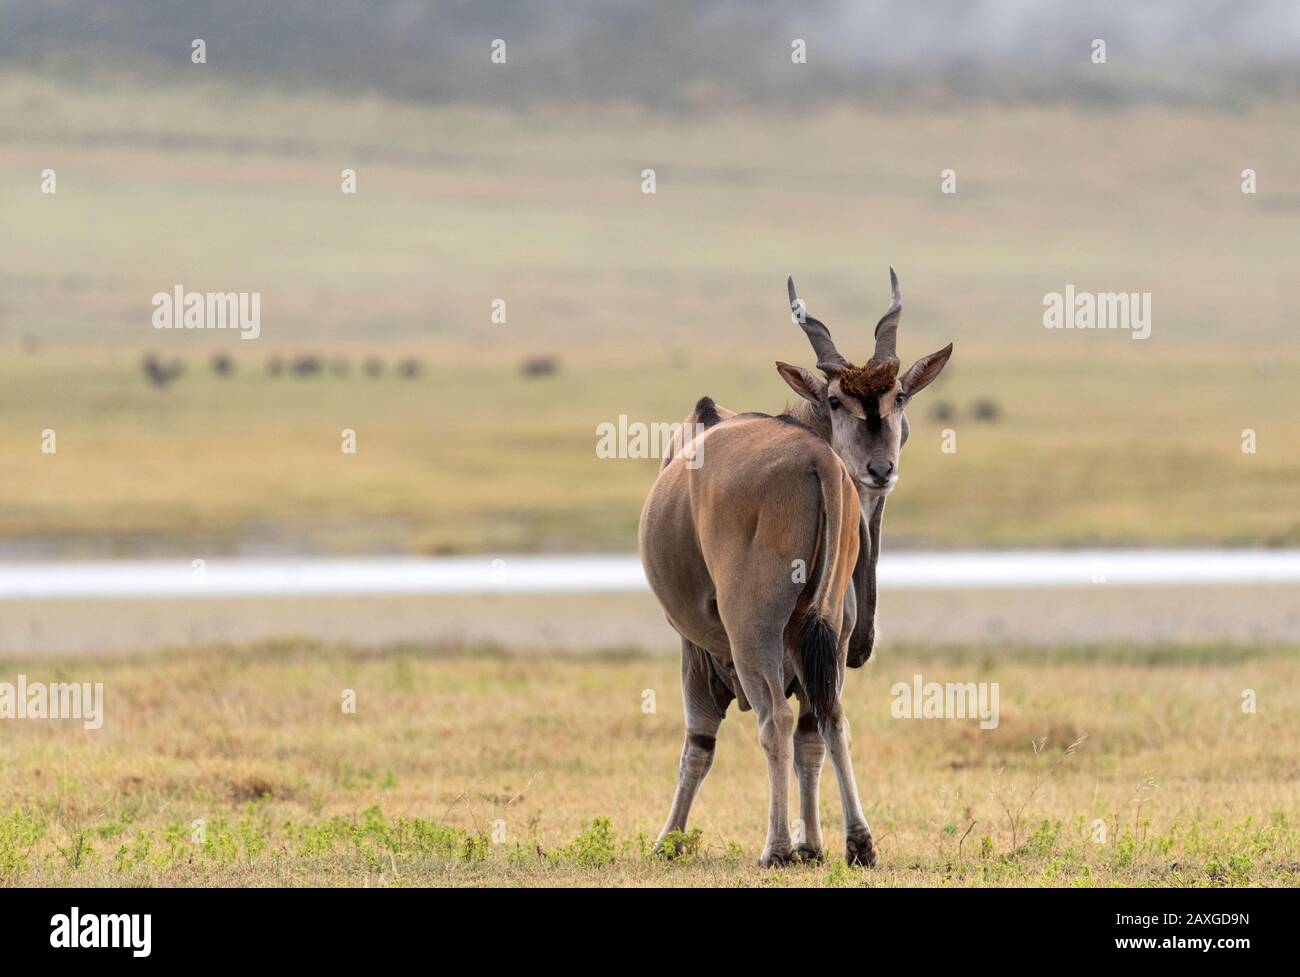 Le plus grand de l'antilope africaine, l'Eland, regardant de nouveau qui prend sa photo. Banque D'Images